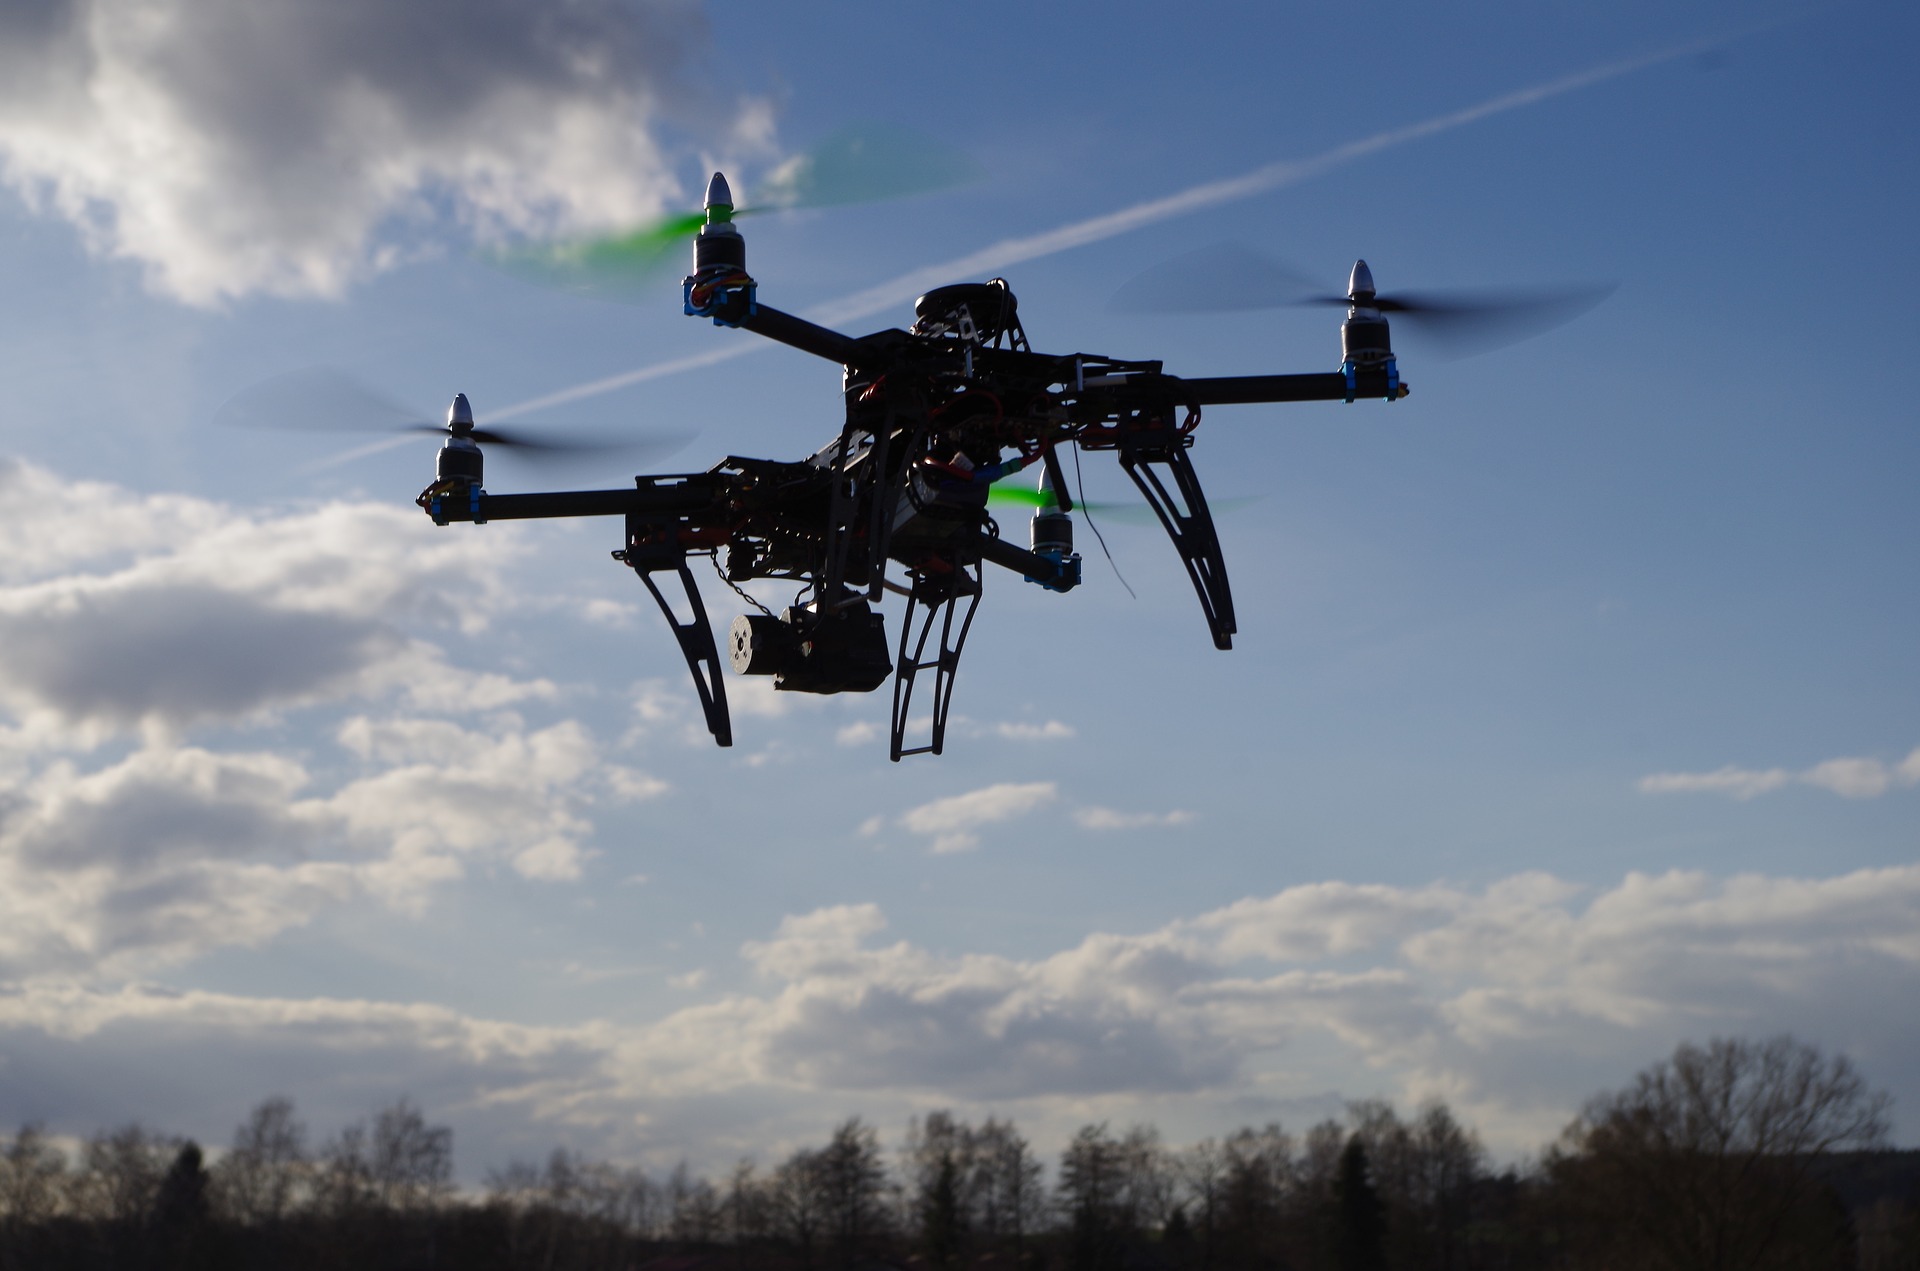 Das Hobby Drohnen bauen und fliegen